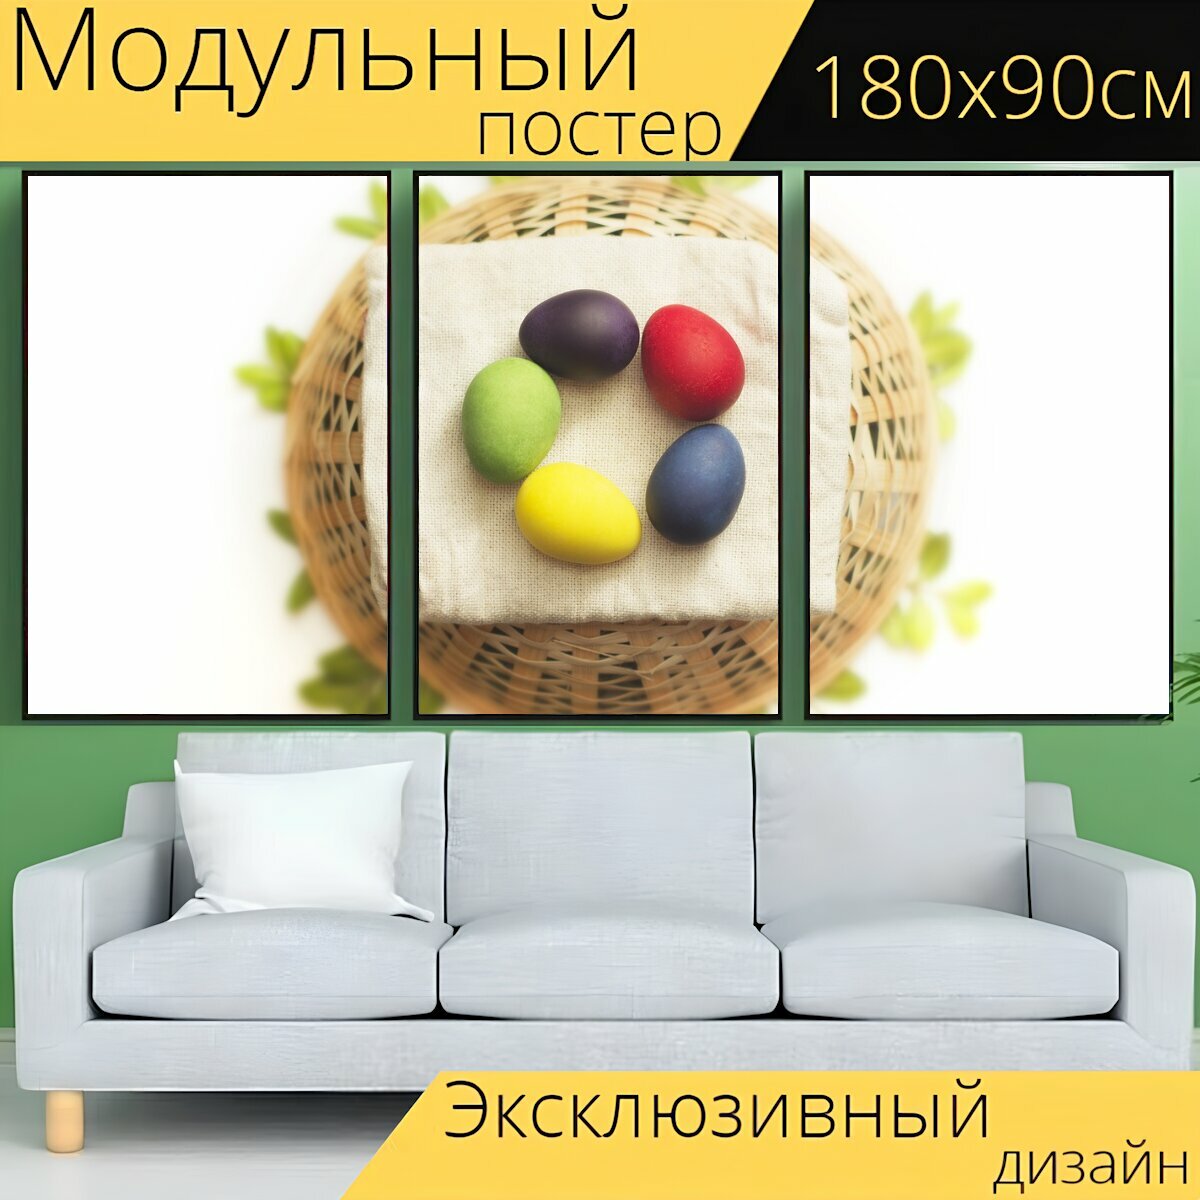 Модульный постер "Пасха, яйца, разноцветные" 180 x 90 см. для интерьера